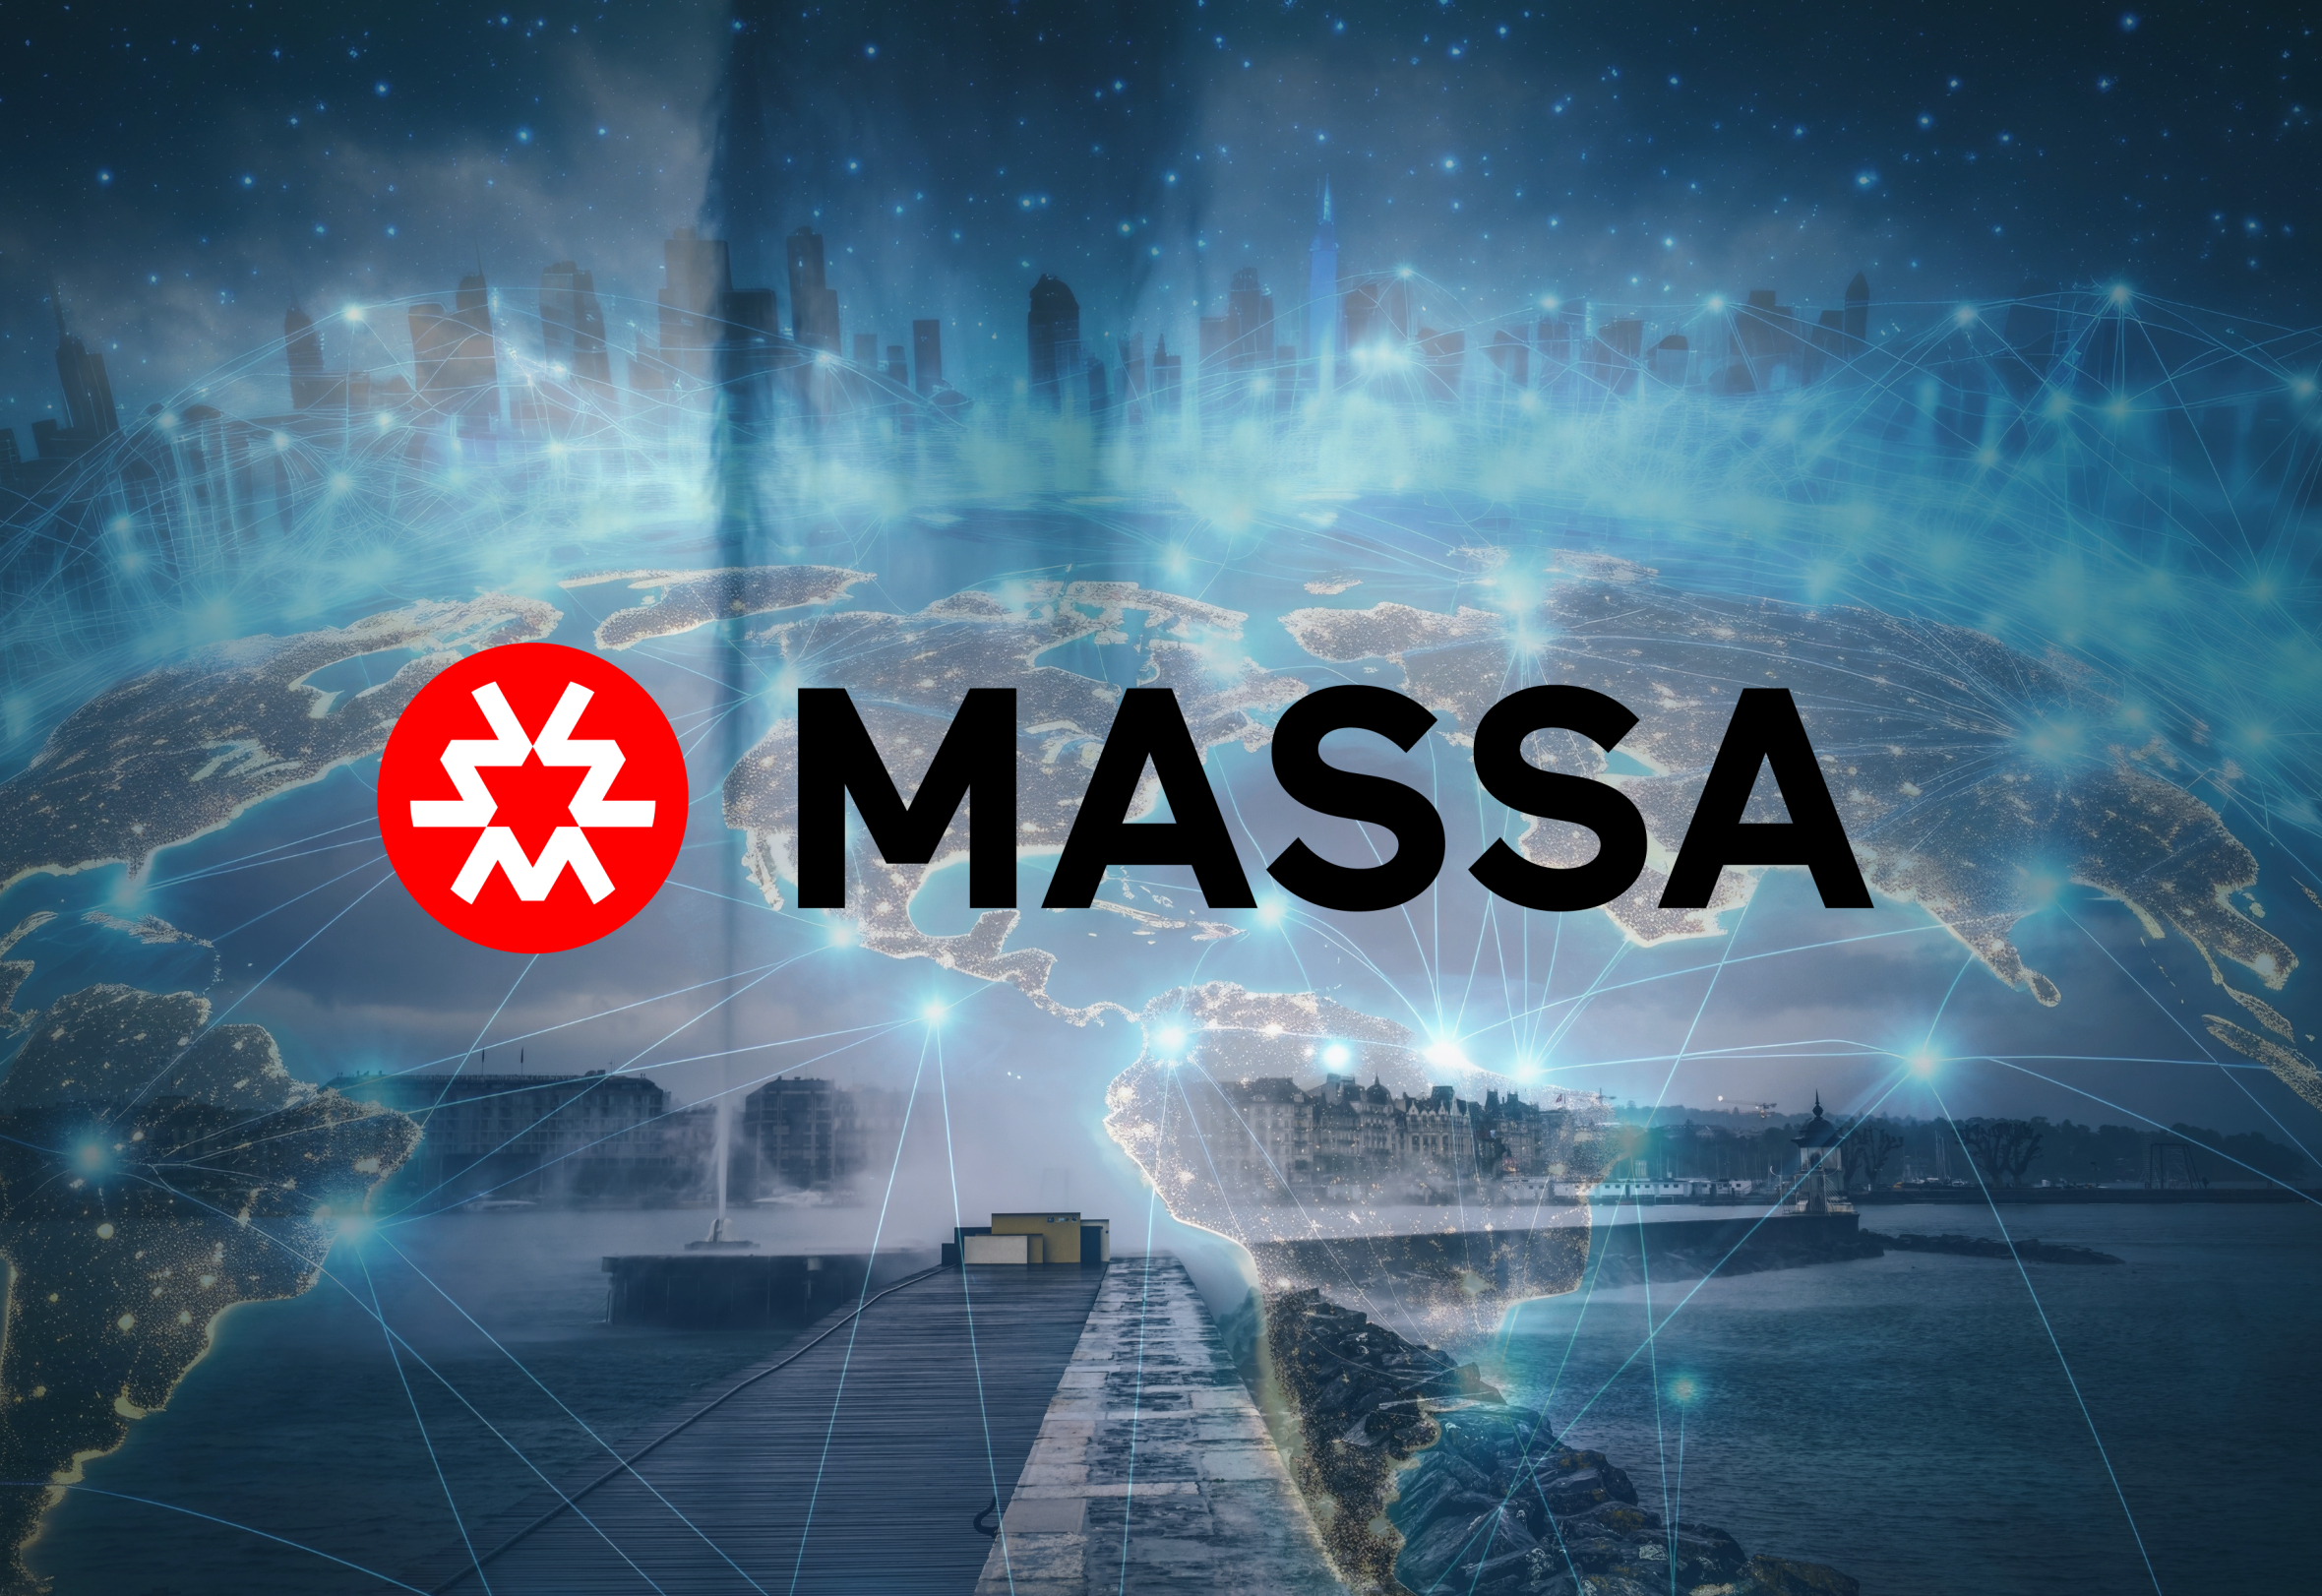 Le choix de Genève par Massa souligne l'importance croissante du canton dans le paysage mondial de la blockchain, qui promet d'être un terrain fertile pour le développement et l'expansion des technologies de rupture.